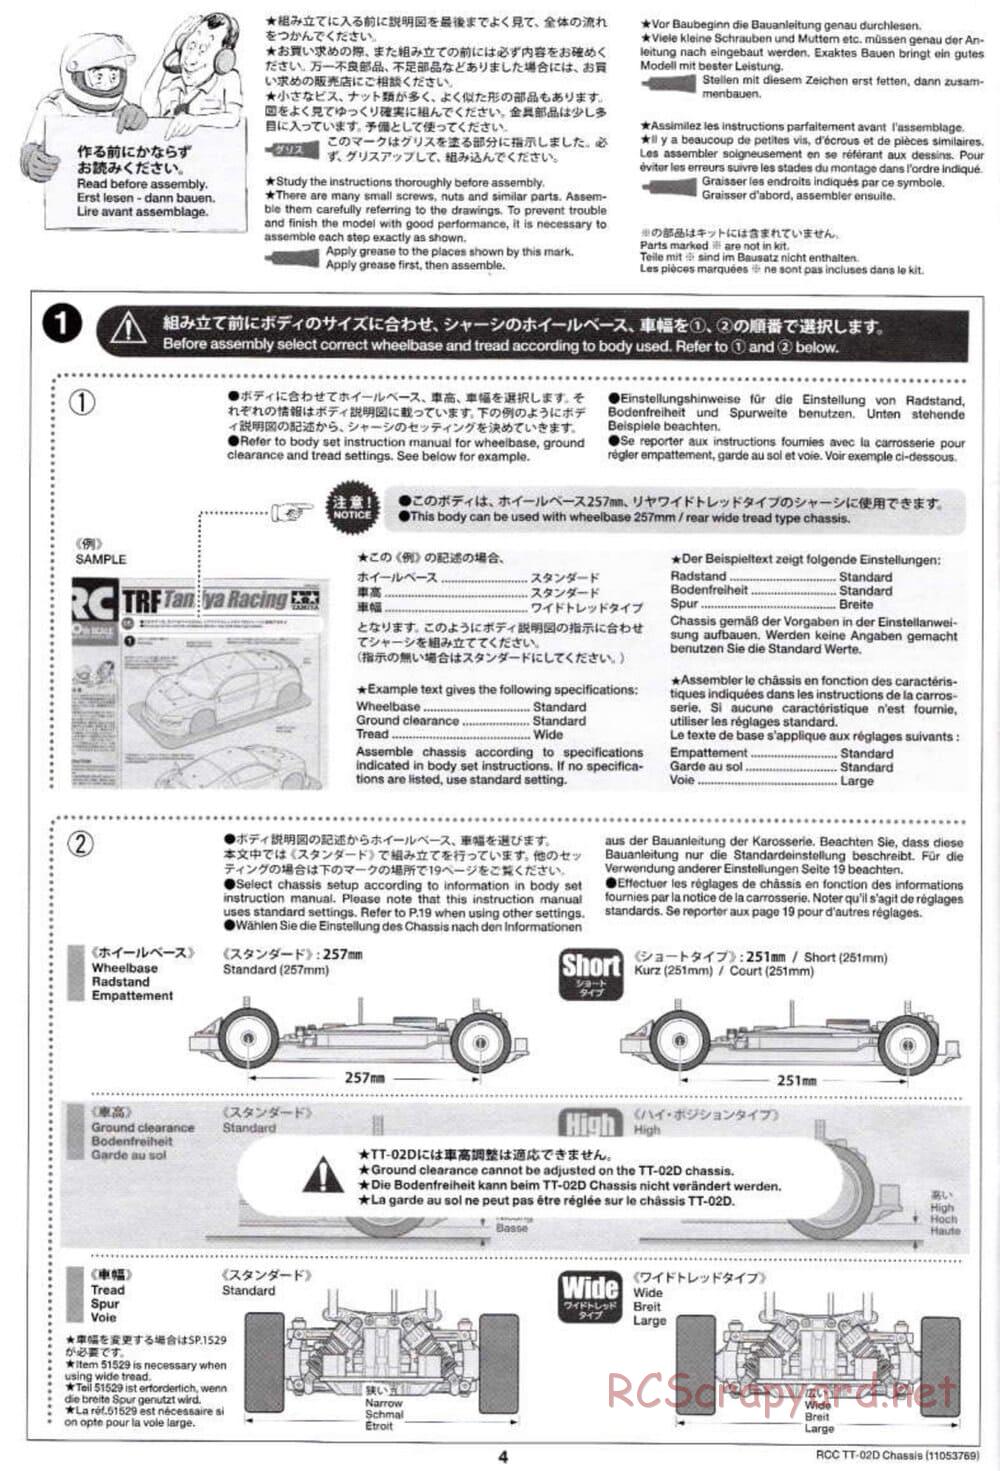 Tamiya - TT-02D Chassis - Manual - Page 4